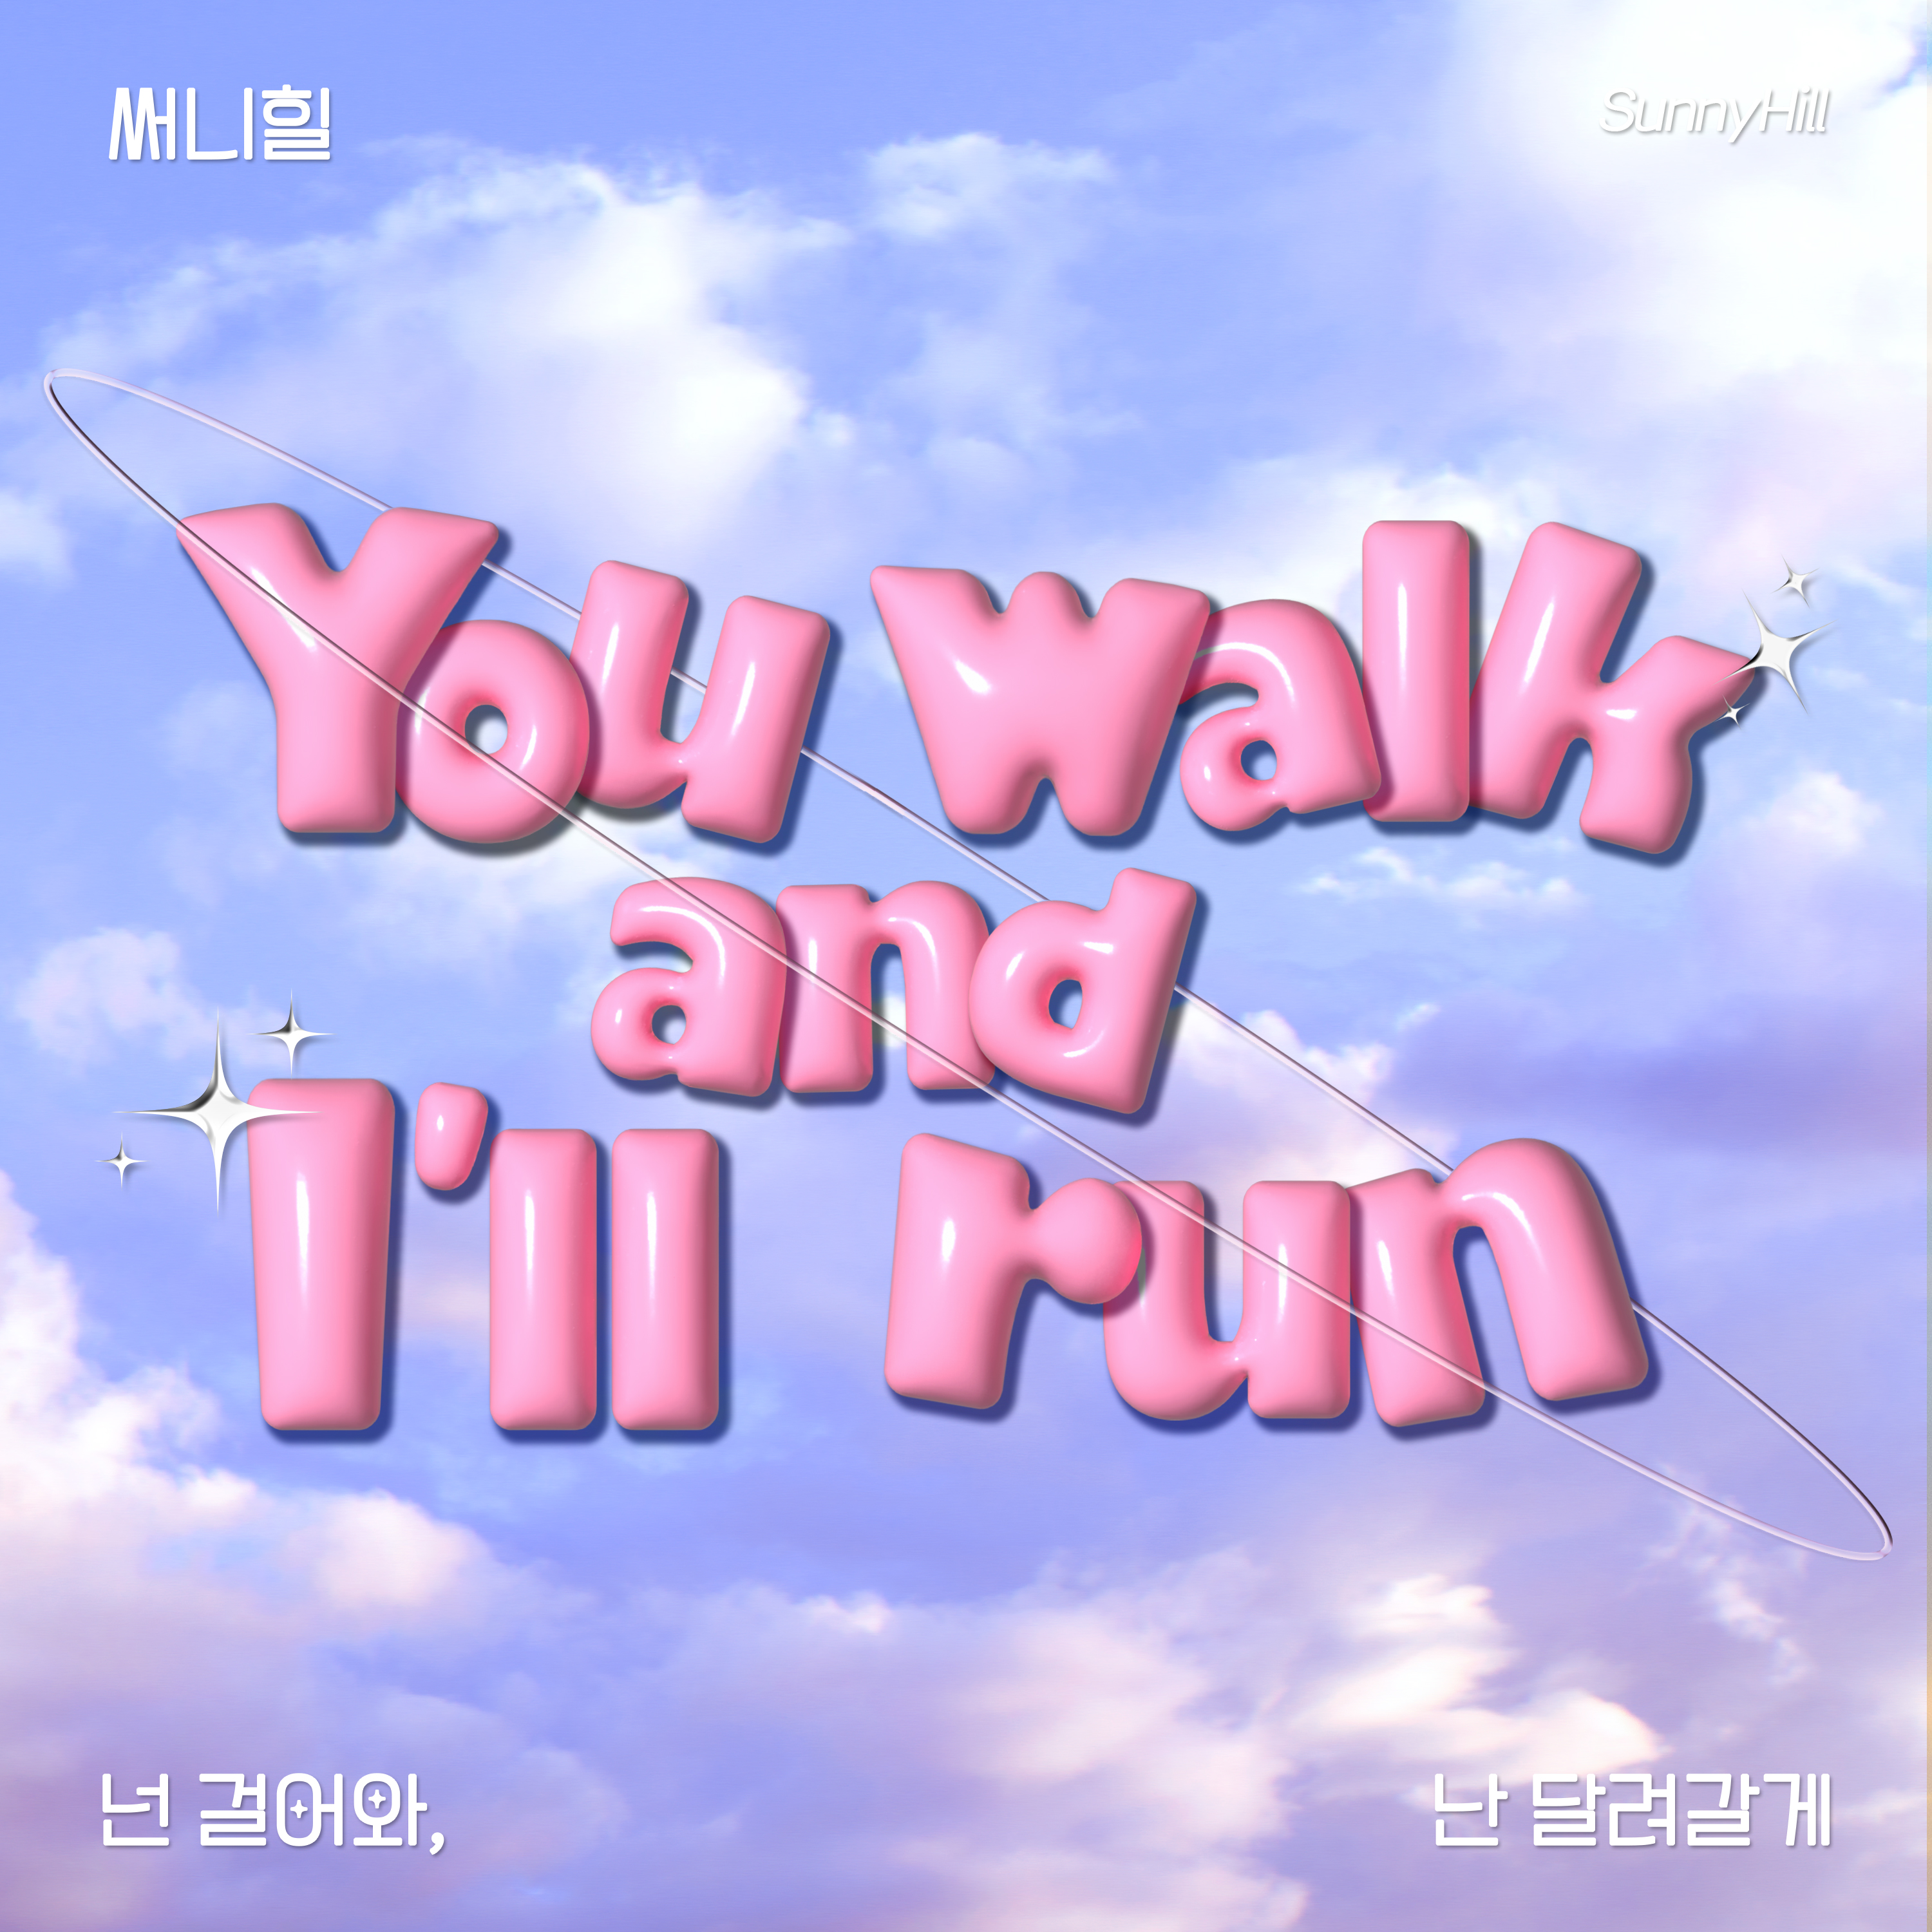 [情報] Sunny Hill - You walk, and I'll run